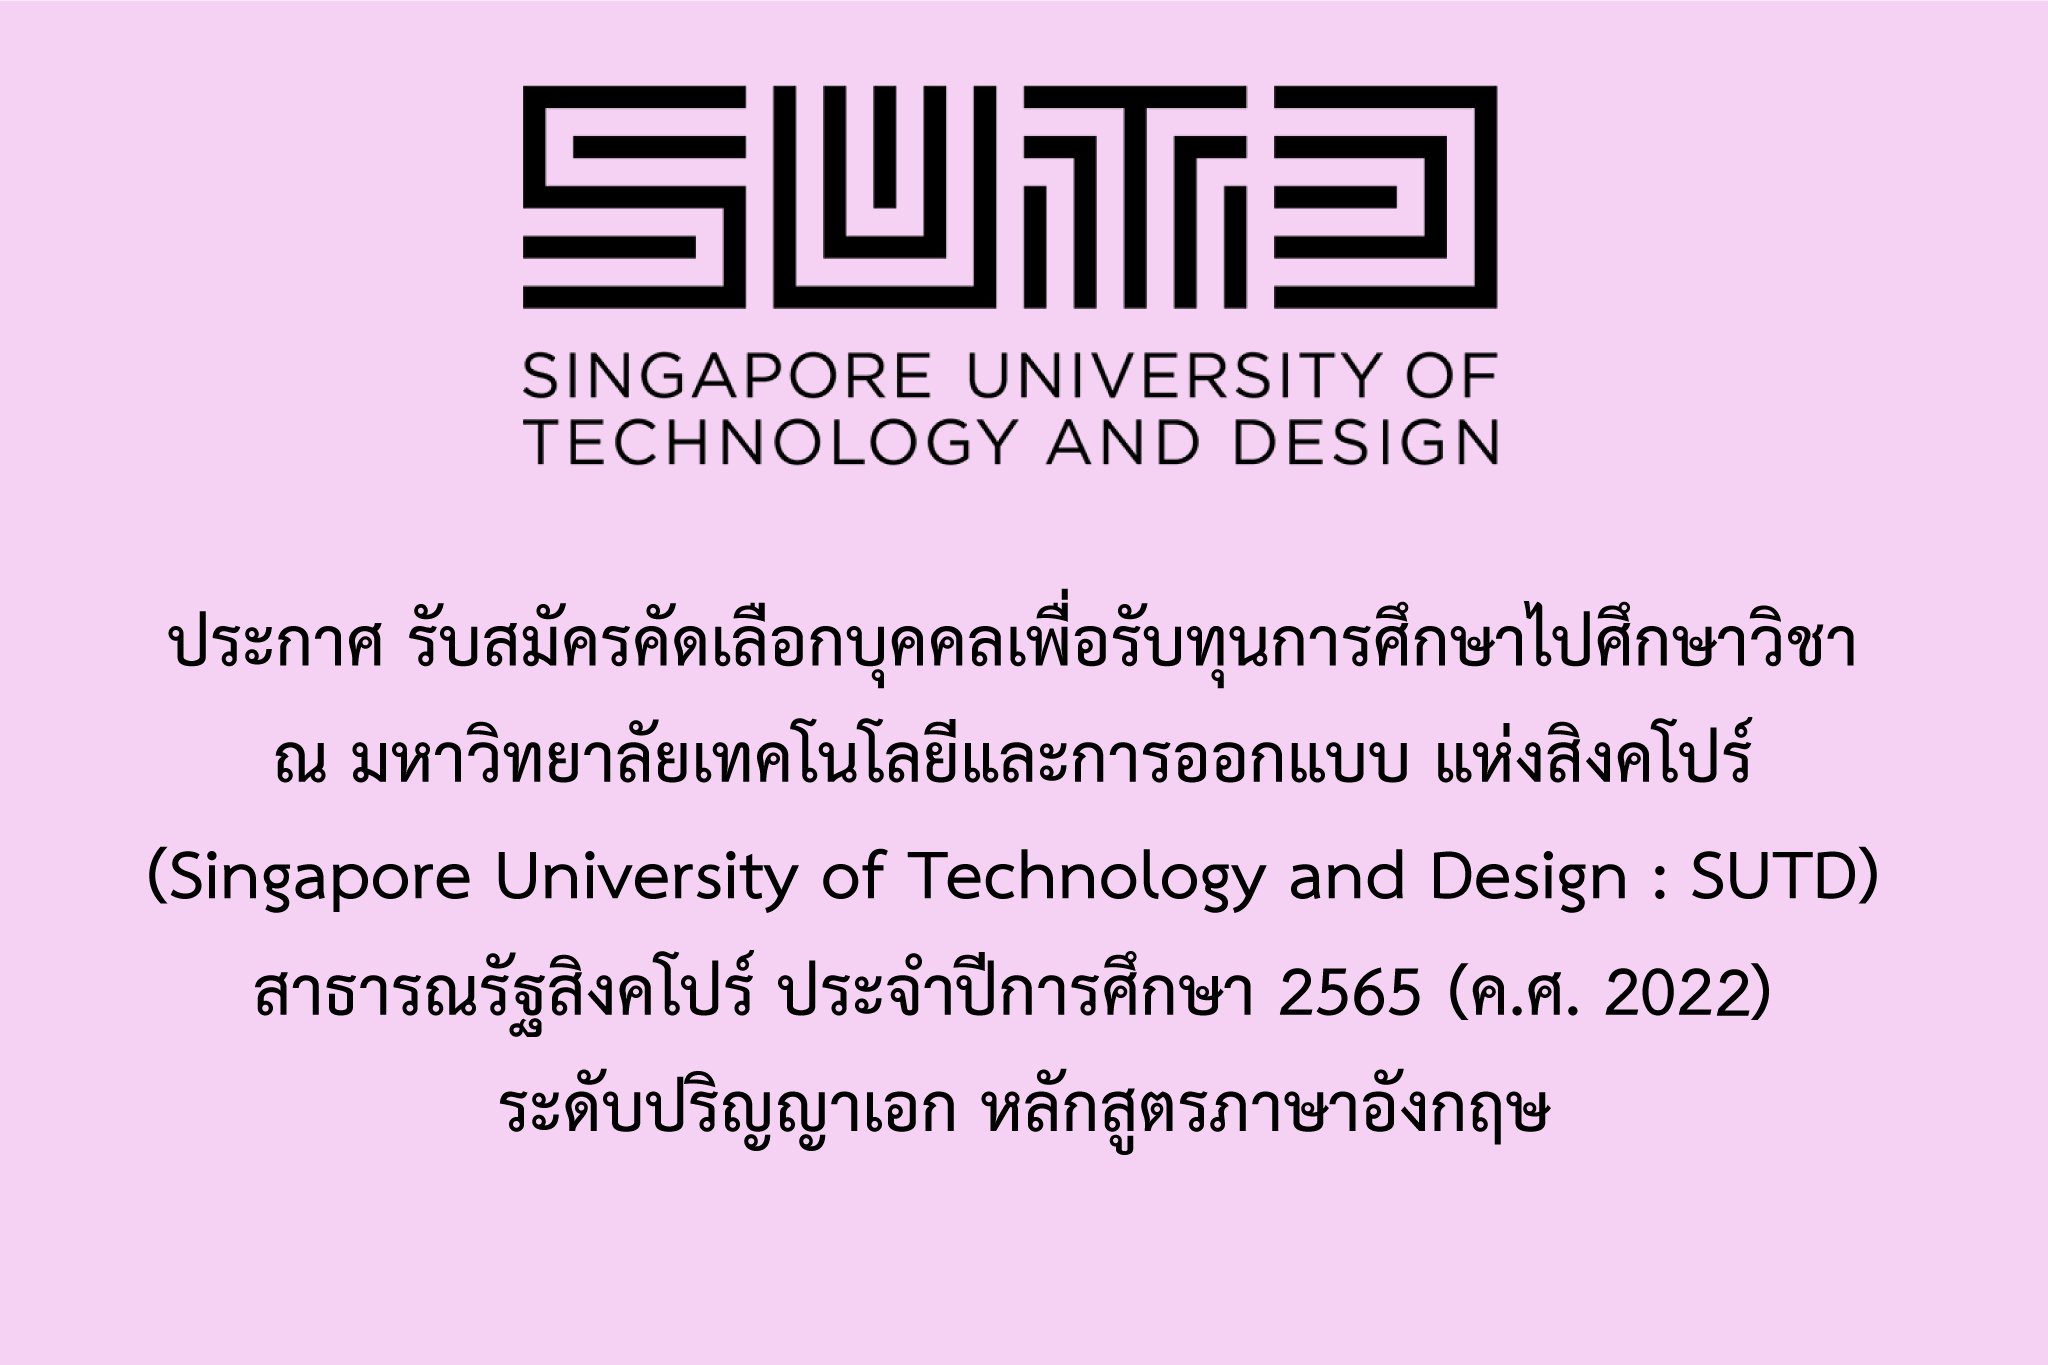 ประกาศรับสมัครคัดเลือกบุคคลเพื่อรับทุนการศึกษาไปศึกษาวิชา ณ มหาวิทยาลัยเทคโนโลยีและการออกแบบ แห่งสิงคโปร์ (Singapore University of Technology and Design : SUTD) สาธารณรัฐสิงคโปร์ ประจำปีการศึกษา 2565 (ค.ศ. 2022)  ระดับปริญญาเอก หลักสูตรภาษาอังกฤษ